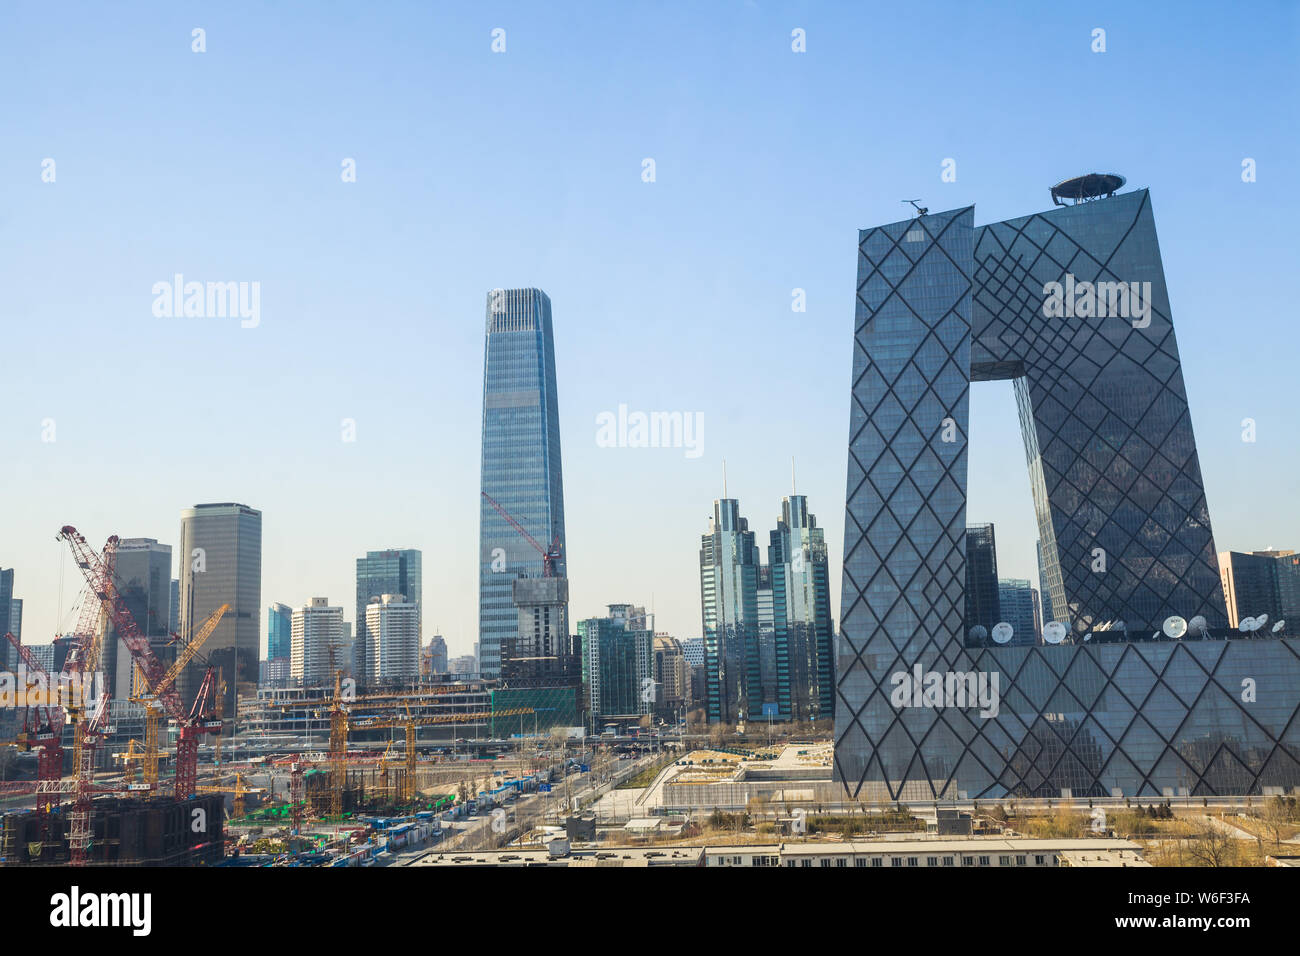 --FILE--Vue sur le siège de la télévision centrale de Chine (CCTV), à Pékin, en Chine, 11 janvier 2015. Le plus grand la télévision publique et r Banque D'Images